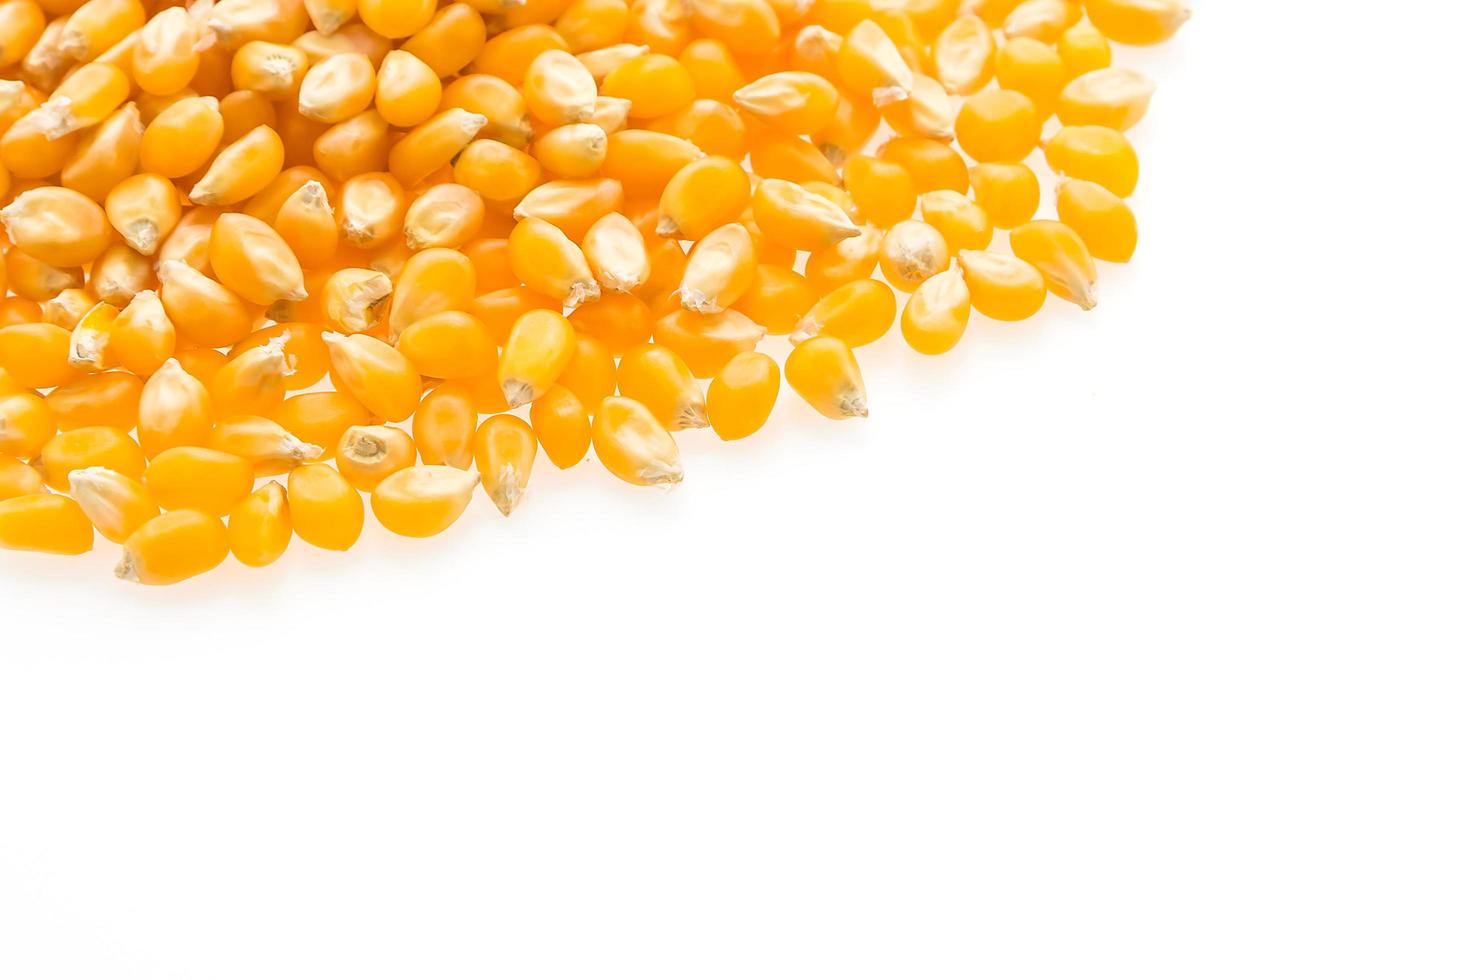 semilla de mazorca de maíz foto